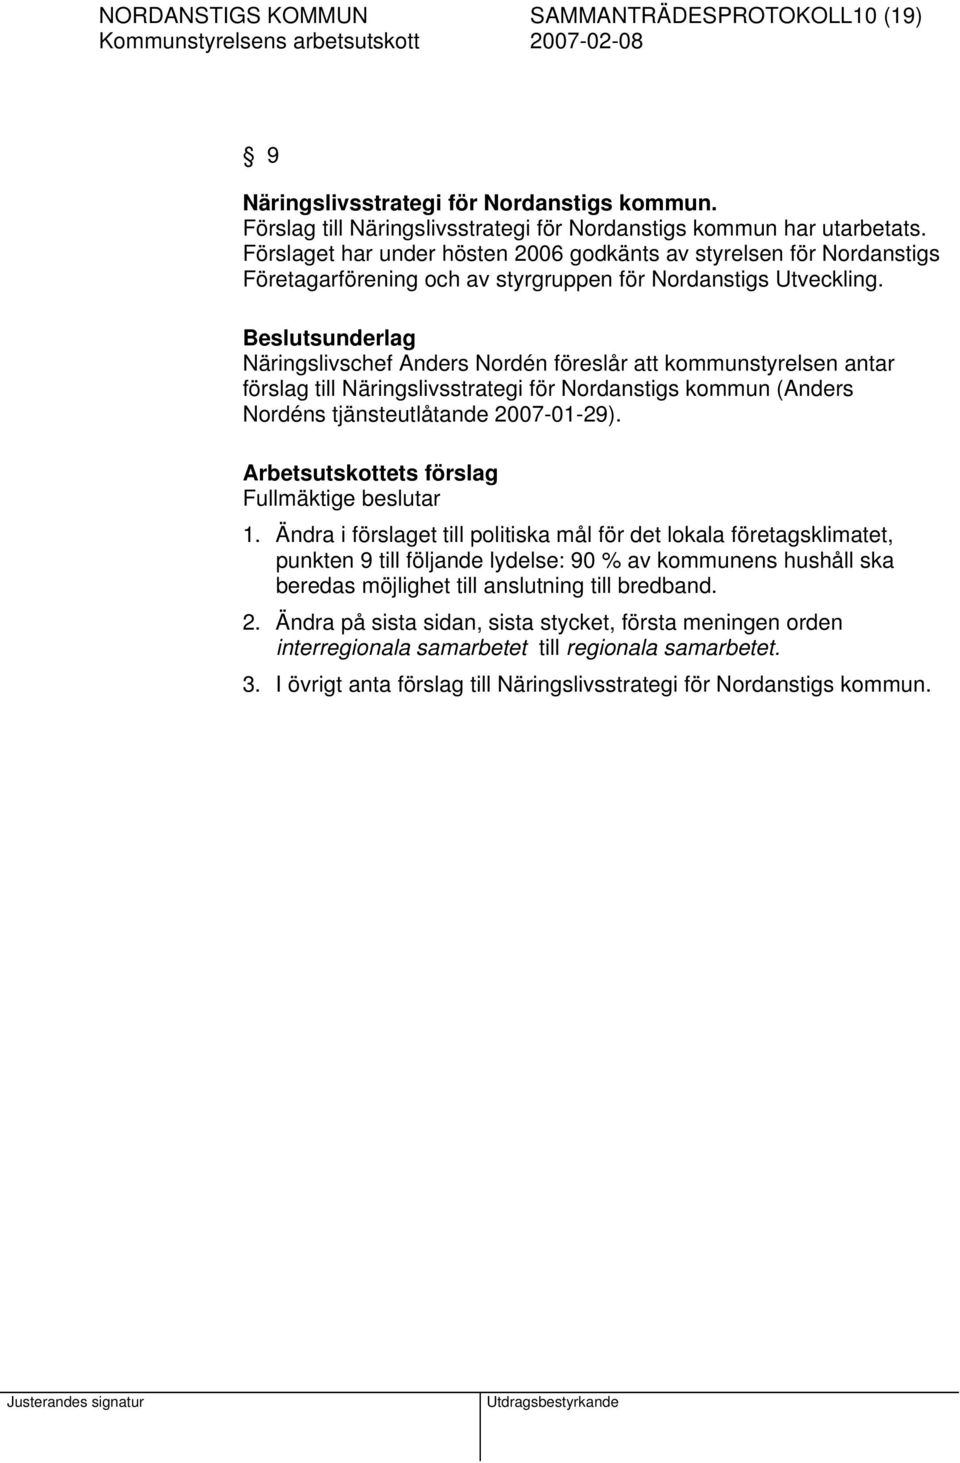 Beslutsunderlag Näringslivschef Anders Nordén föreslår att kommunstyrelsen antar förslag till Näringslivsstrategi för Nordanstigs kommun (Anders Nordéns tjänsteutlåtande 2007-01-29).